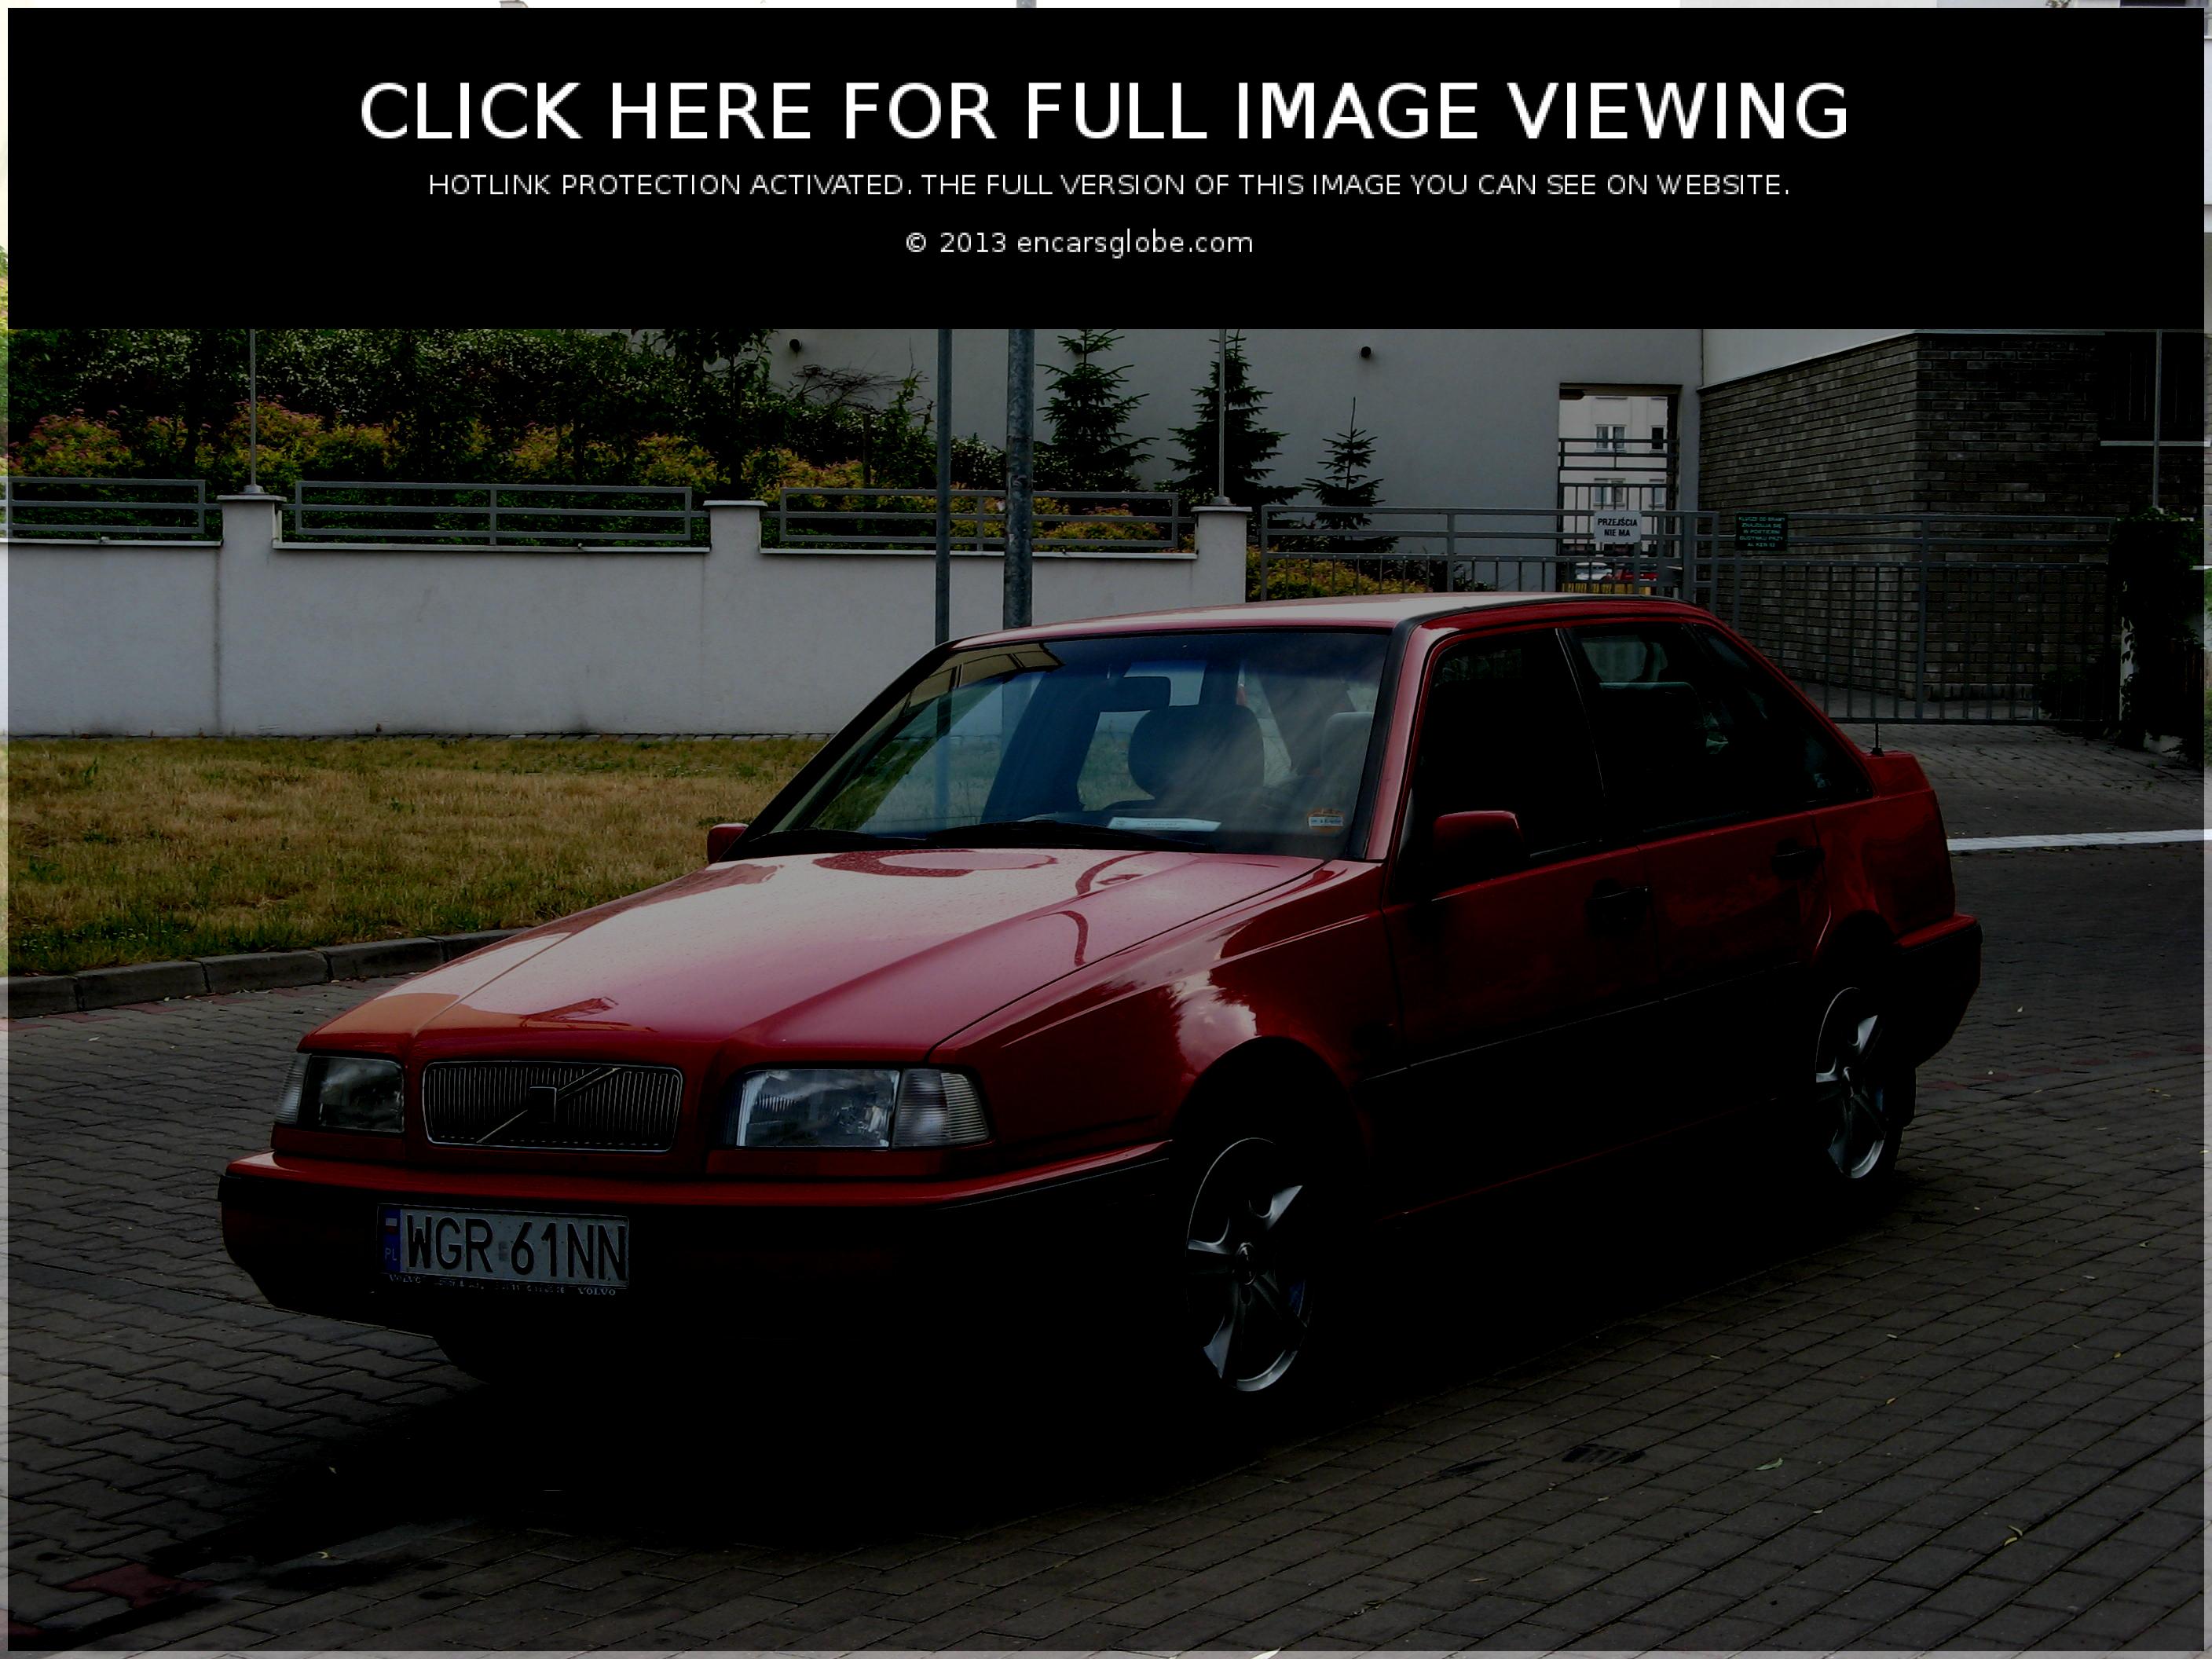 Volvo 440: Description of the model, photo gallery, modifications ...